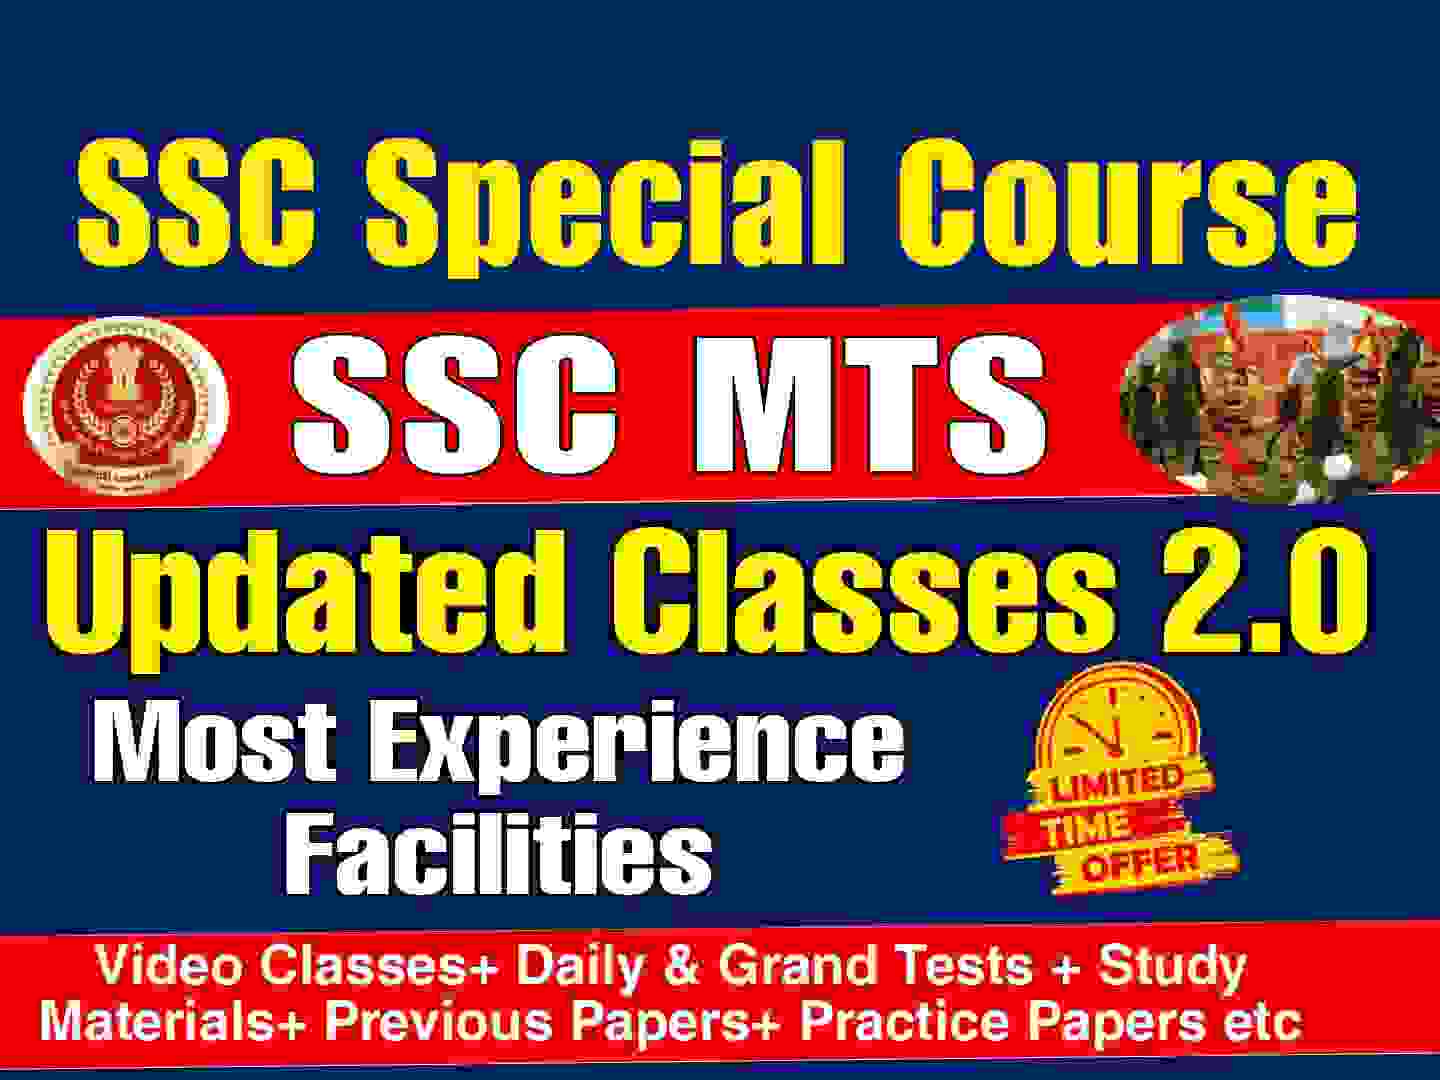 SSC MTS Best Online Coaching